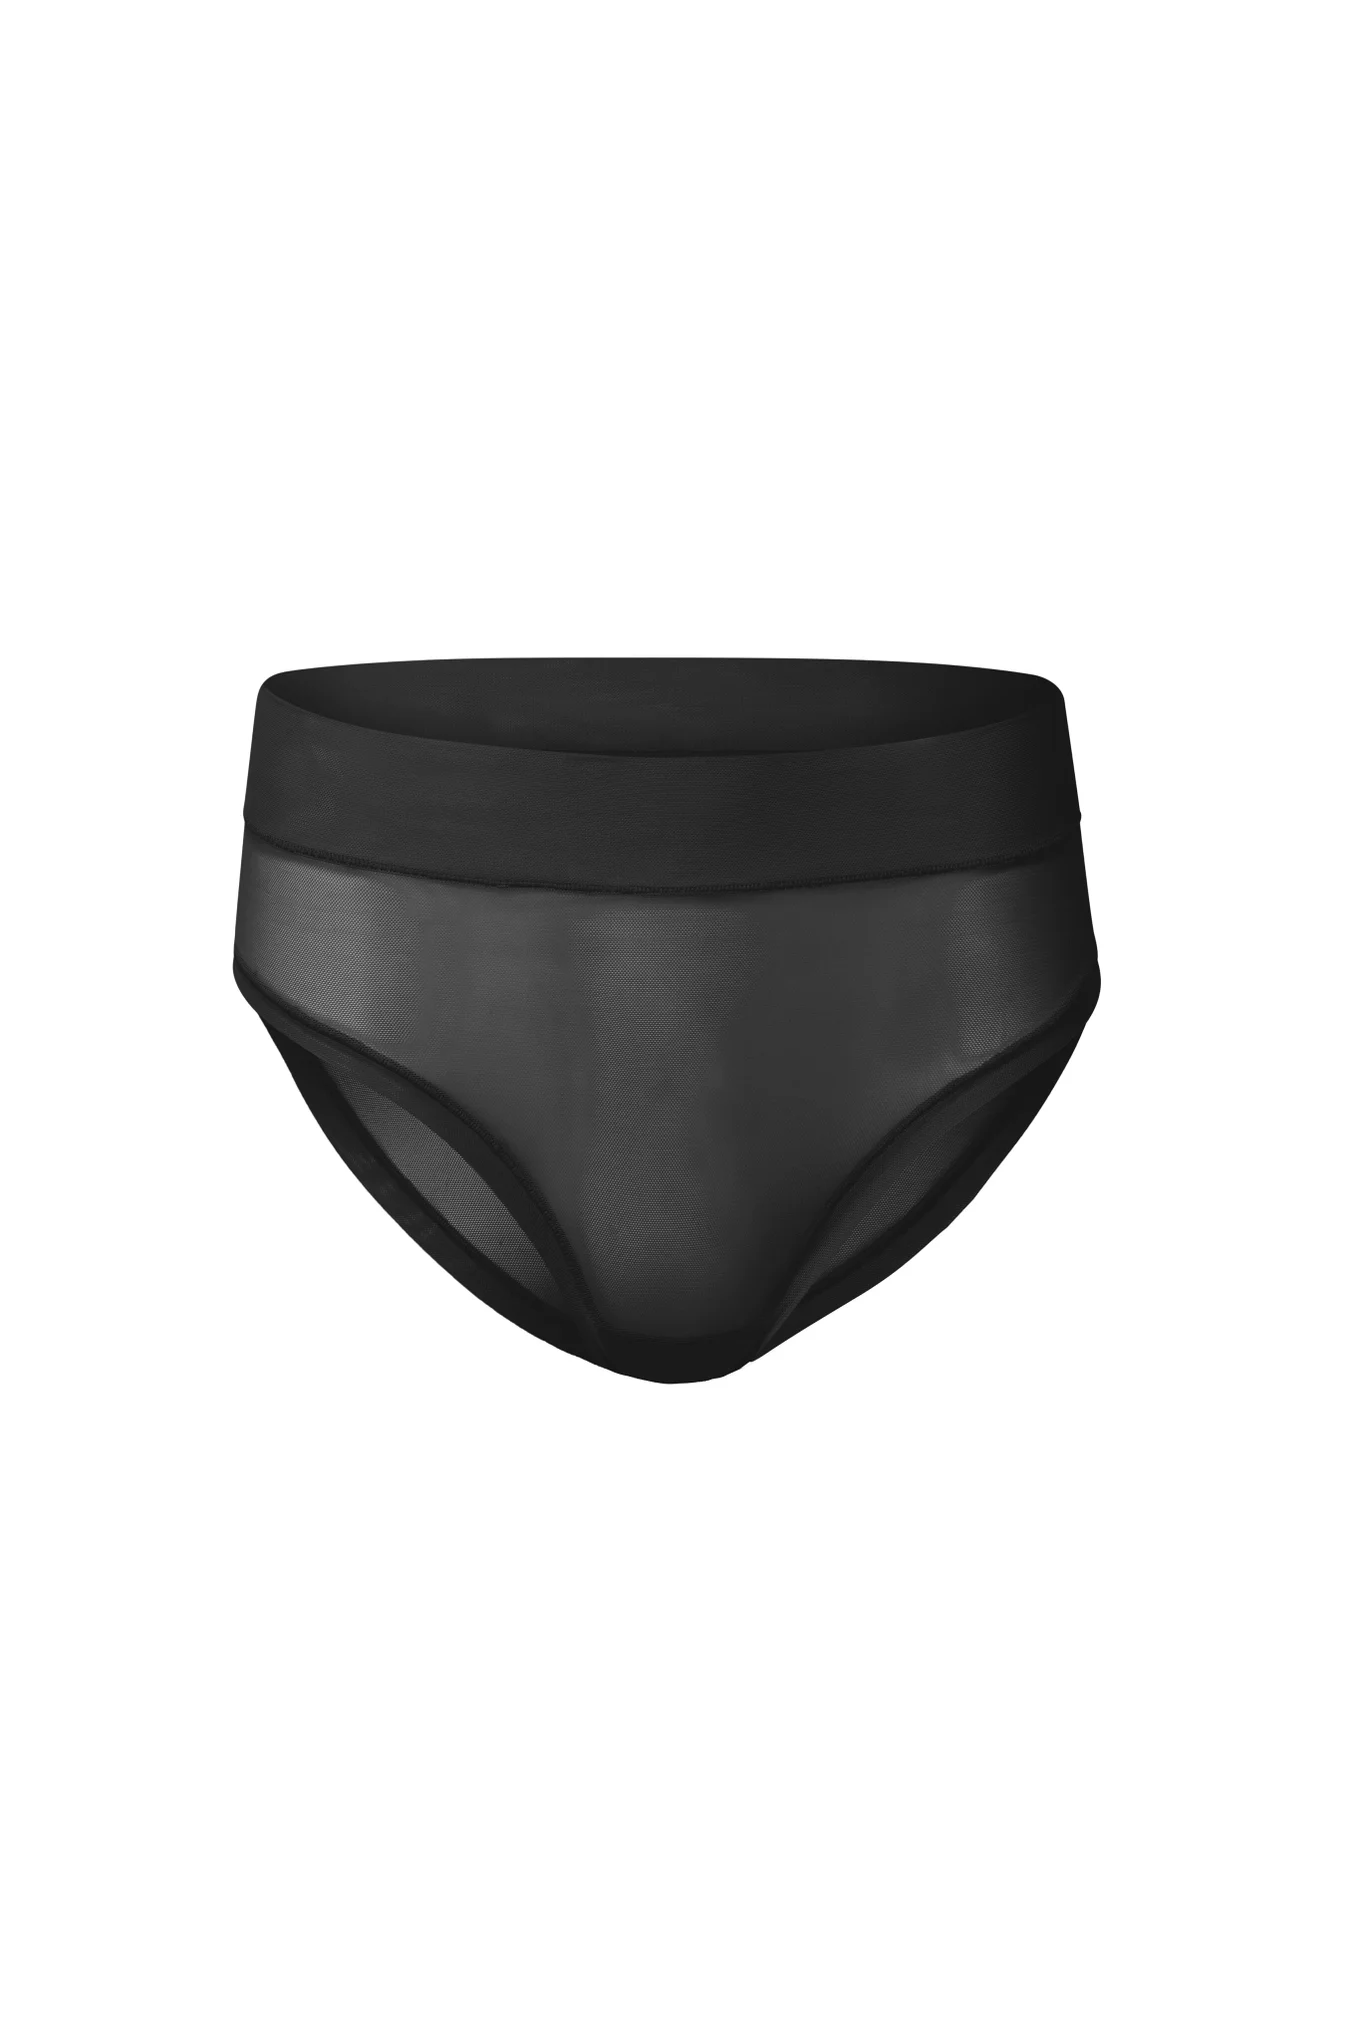 Genie Slim Panties 360 2 pack Nude/Black 2X - Retail Box - As Seen